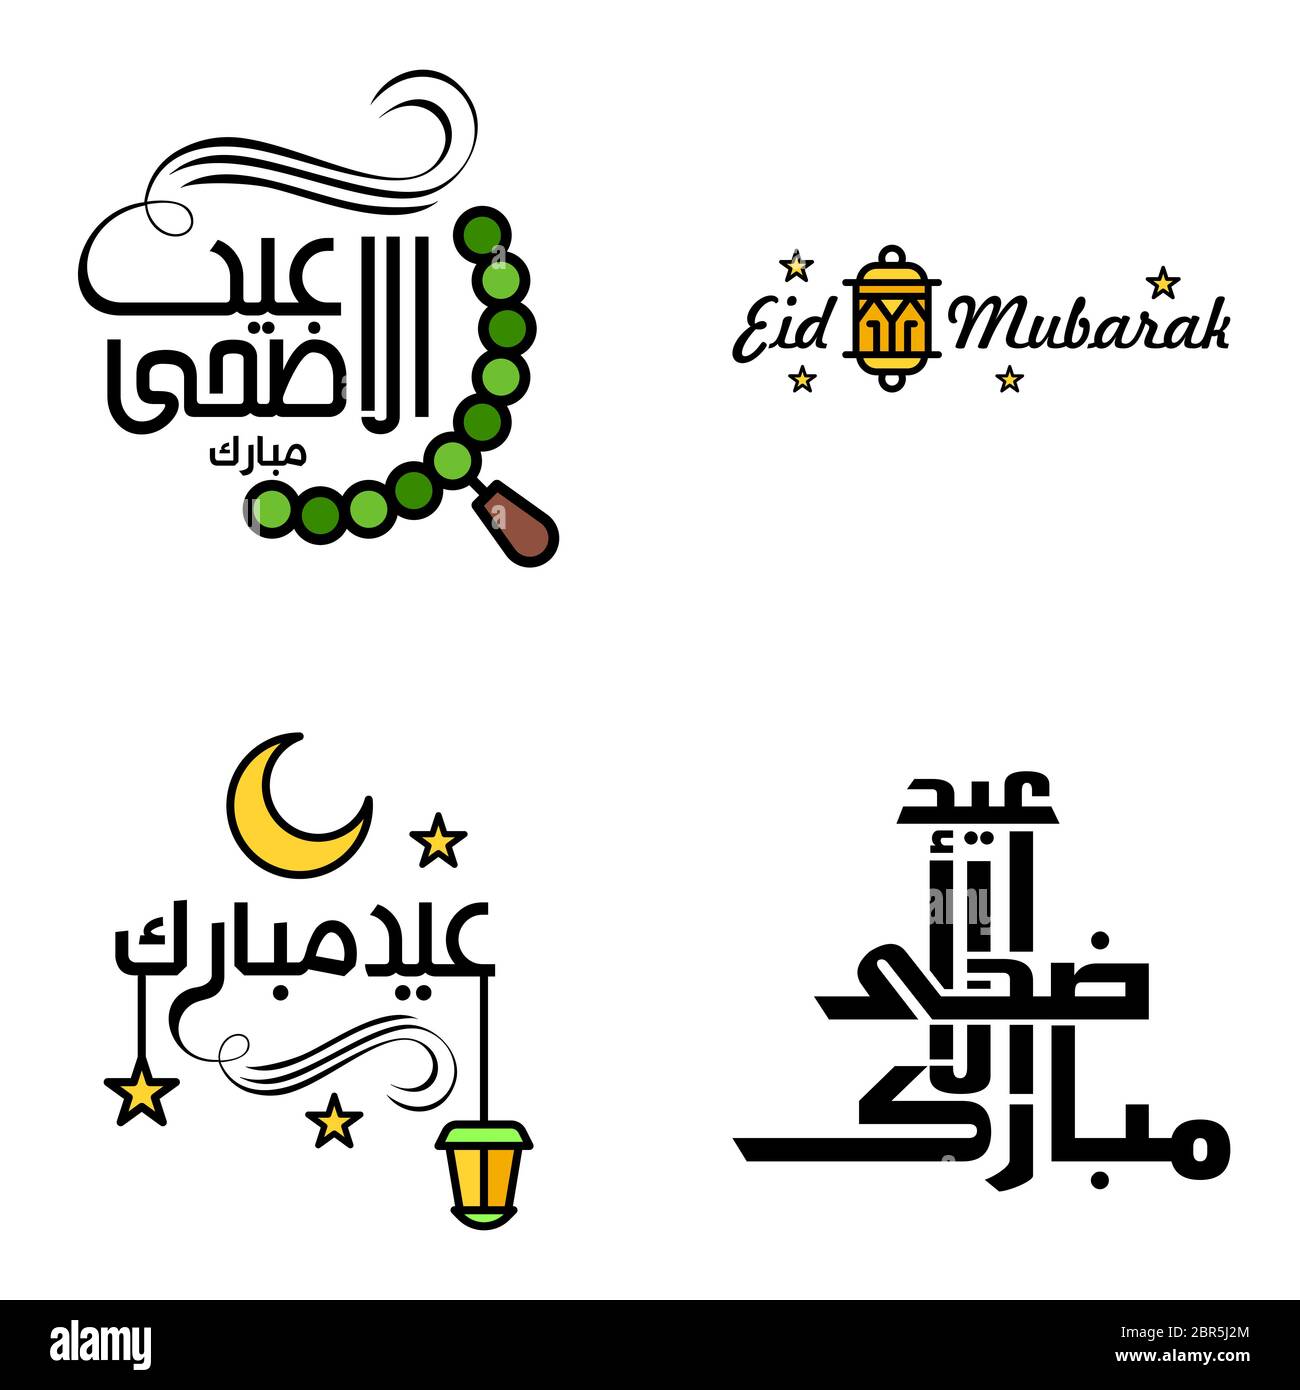 Lot de 4 polices décoratives Art Design Eid Mubarak avec Calligraphie moderne coloré Moon Stars Lantern ornements surly Illustration de Vecteur